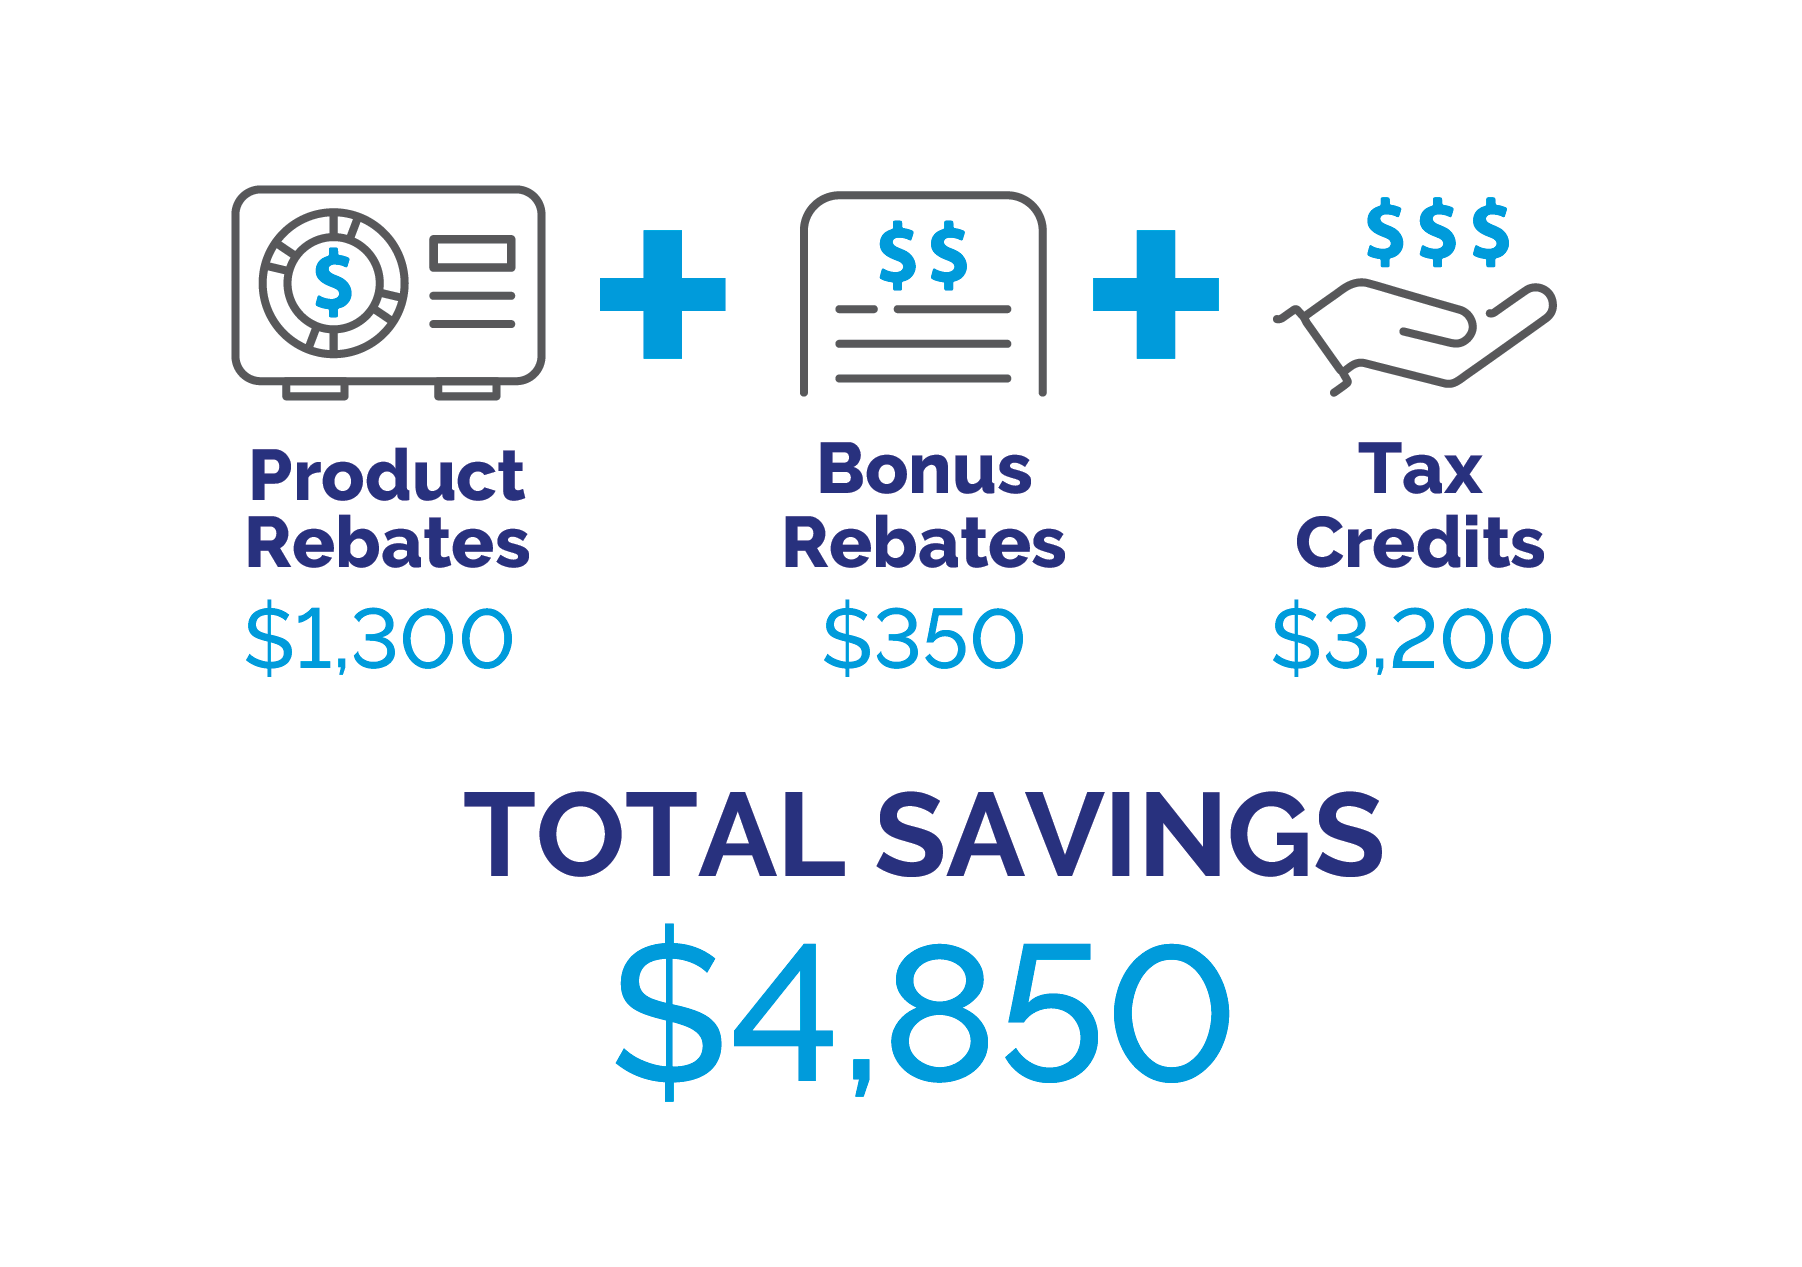 Infographic for product rebates, tax credits, and bonus rebates example scenario.